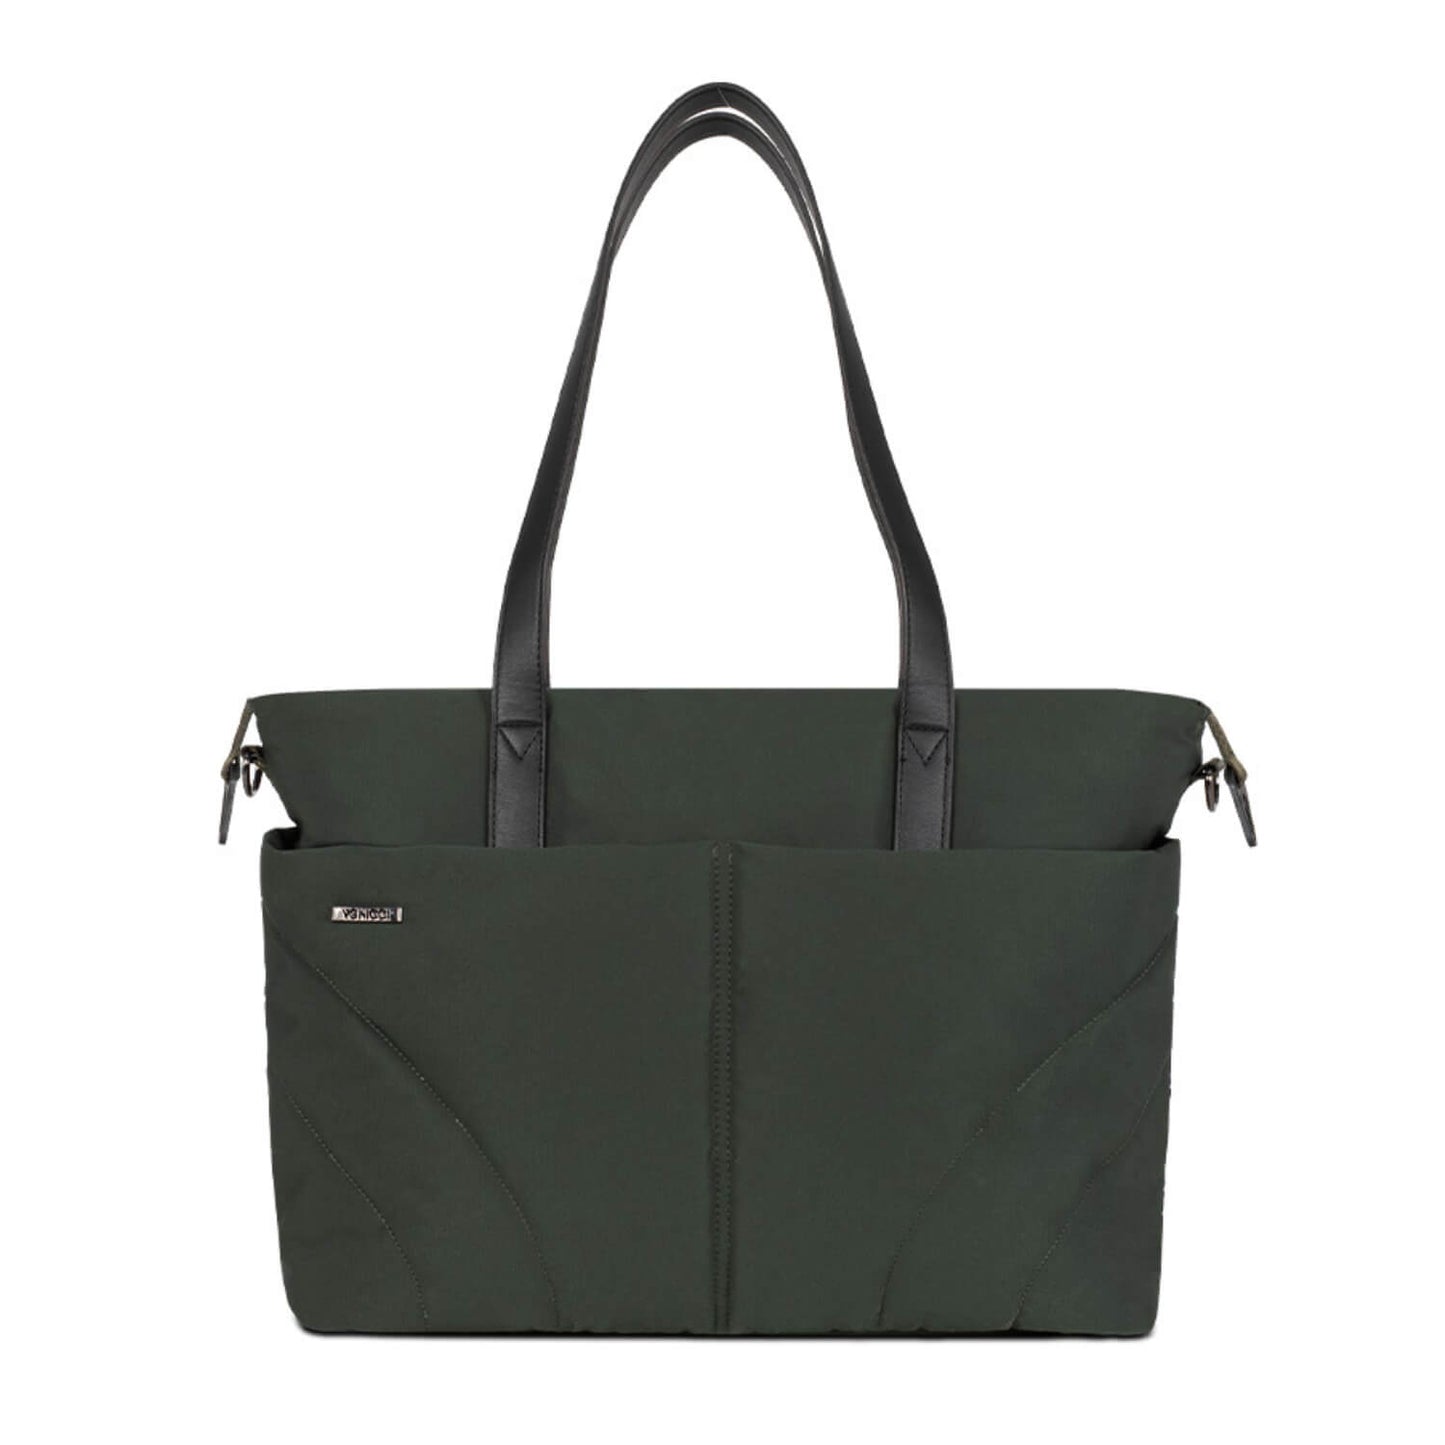 Venicci Claro bag in Forest green colour